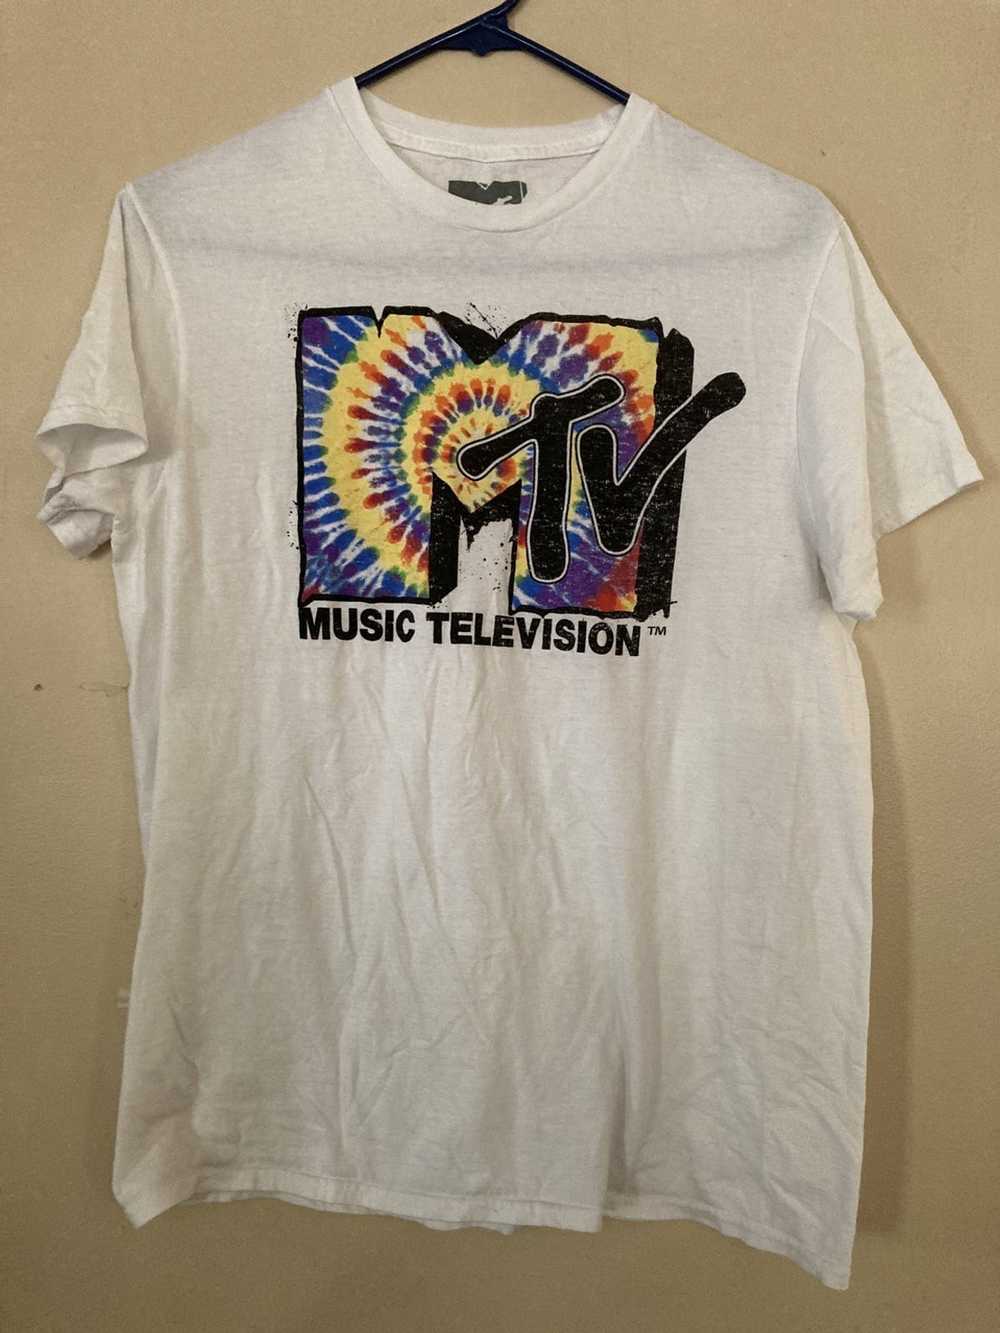 Band Tees × Mtv × Rock Tees MTV T Shirt Tye Dyed … - image 1